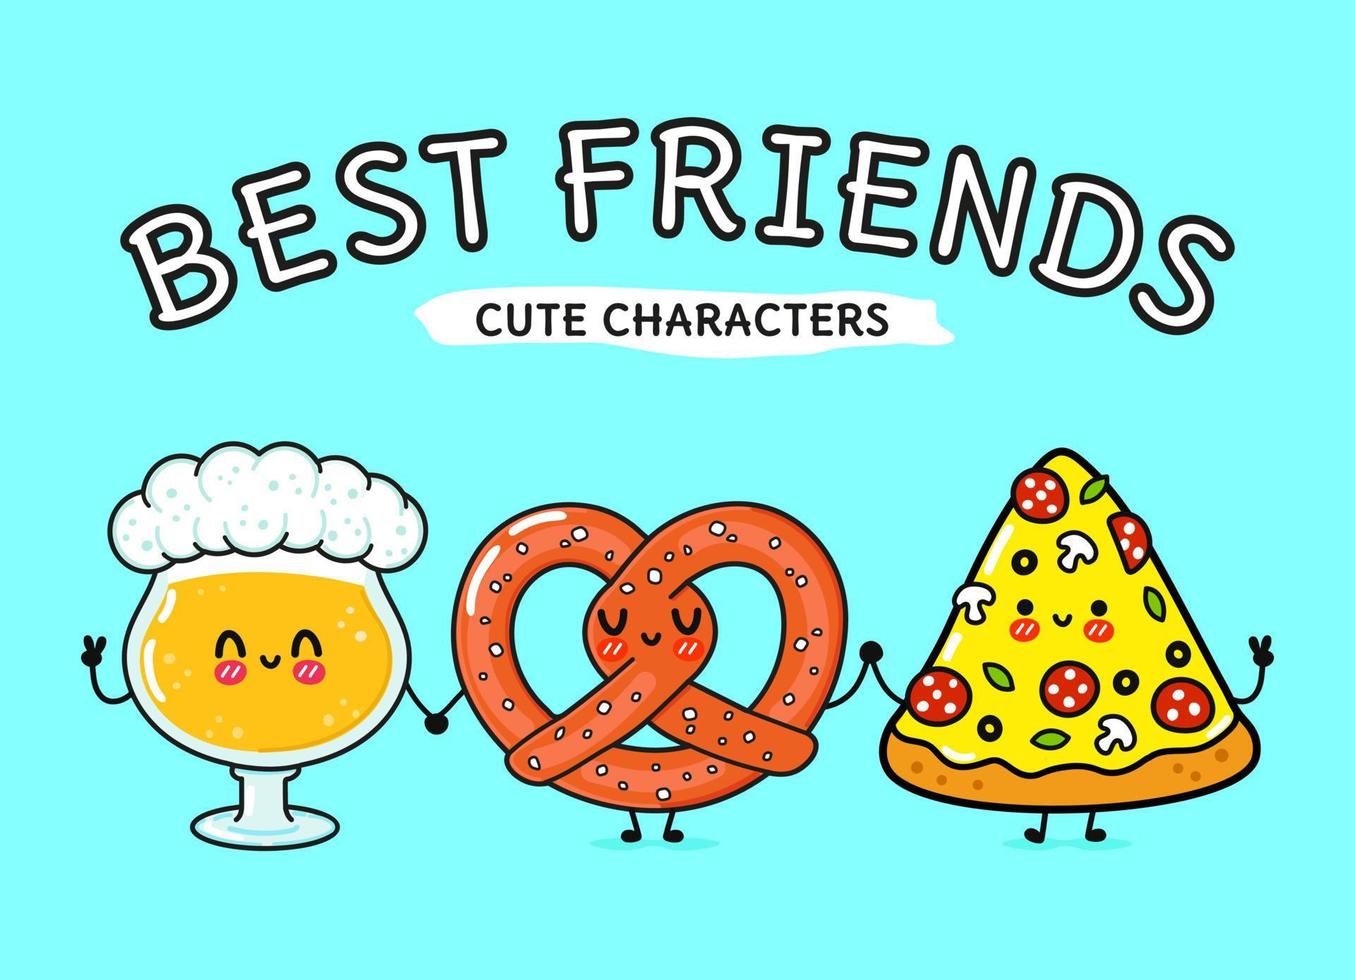 Cute, funny happy glass of beer, pizza and pretzel. Vector hand drawn cartoon kawaii characters, illustration icon. Funny cartoon glass of beer, pizza and pretzel mascot friends concept